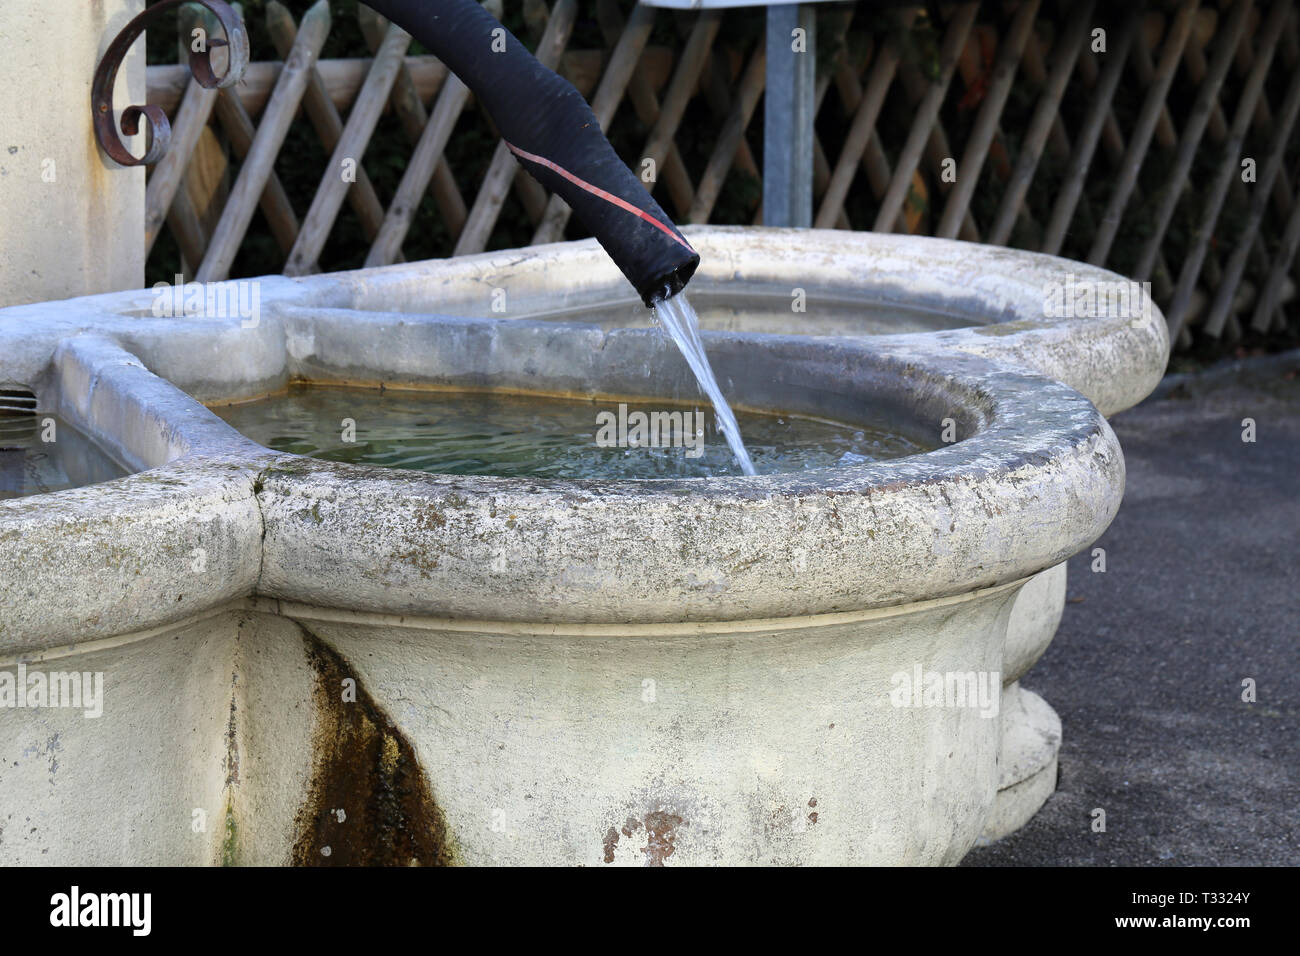 Details einer Trinkbrunnen in Nyon, Schweiz. Dieser Brunnen ist mit hellem  beige Beton hergestellt und hat die alten schwarzen Rohr wie eine  Registerkarte Stockfotografie - Alamy